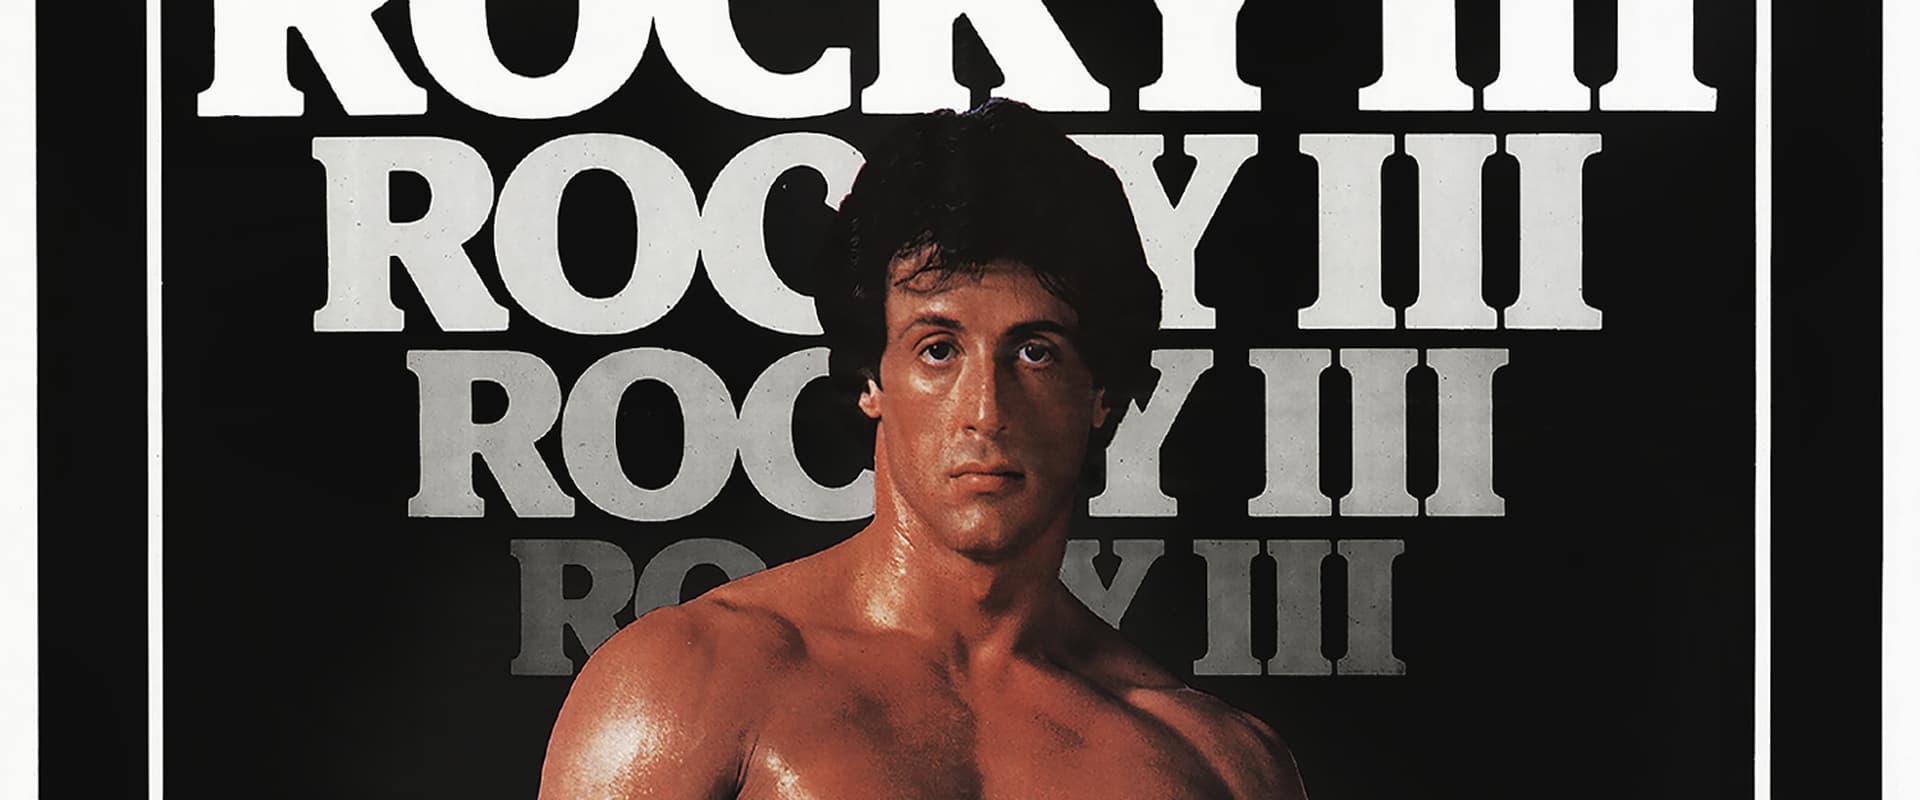 Rocky 3 [HD] (1982)